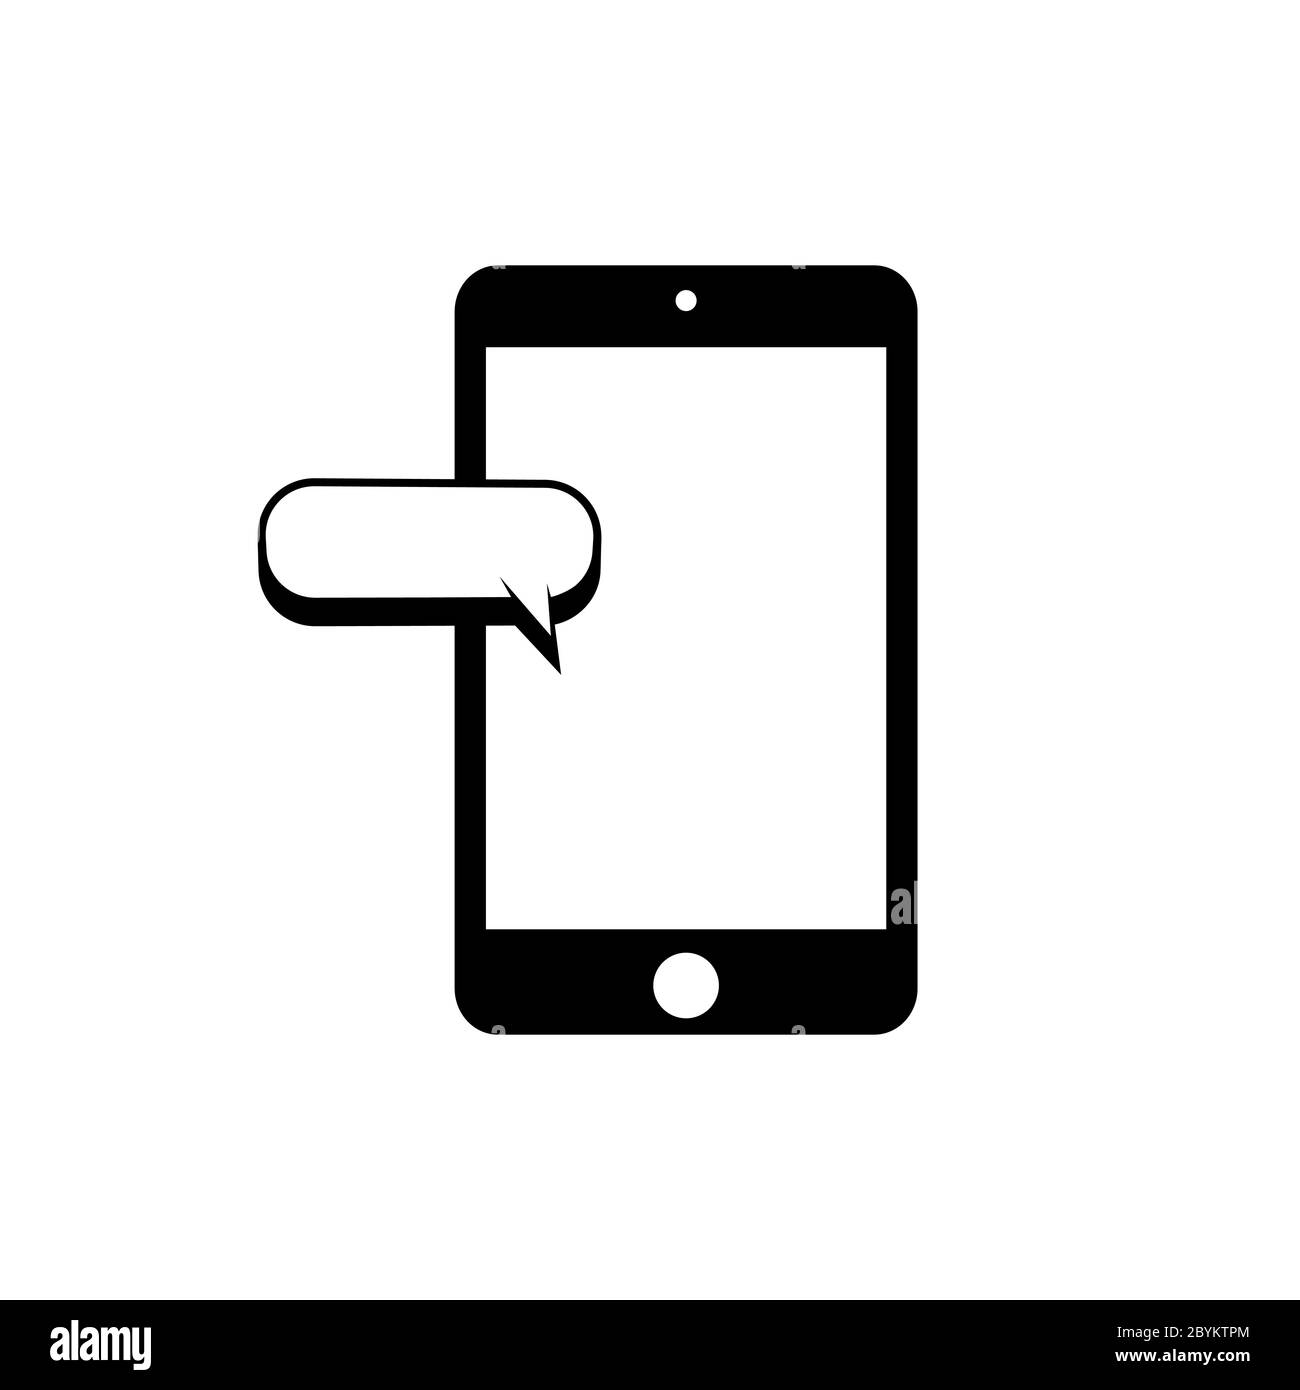 Smartphone Message Icon flach in schwarz mit Chat, sms, Tweet, Instant Messaging, Mobile Messenger Konzepte für Websites, Web-Banner auf isoliert weiß Stock Vektor